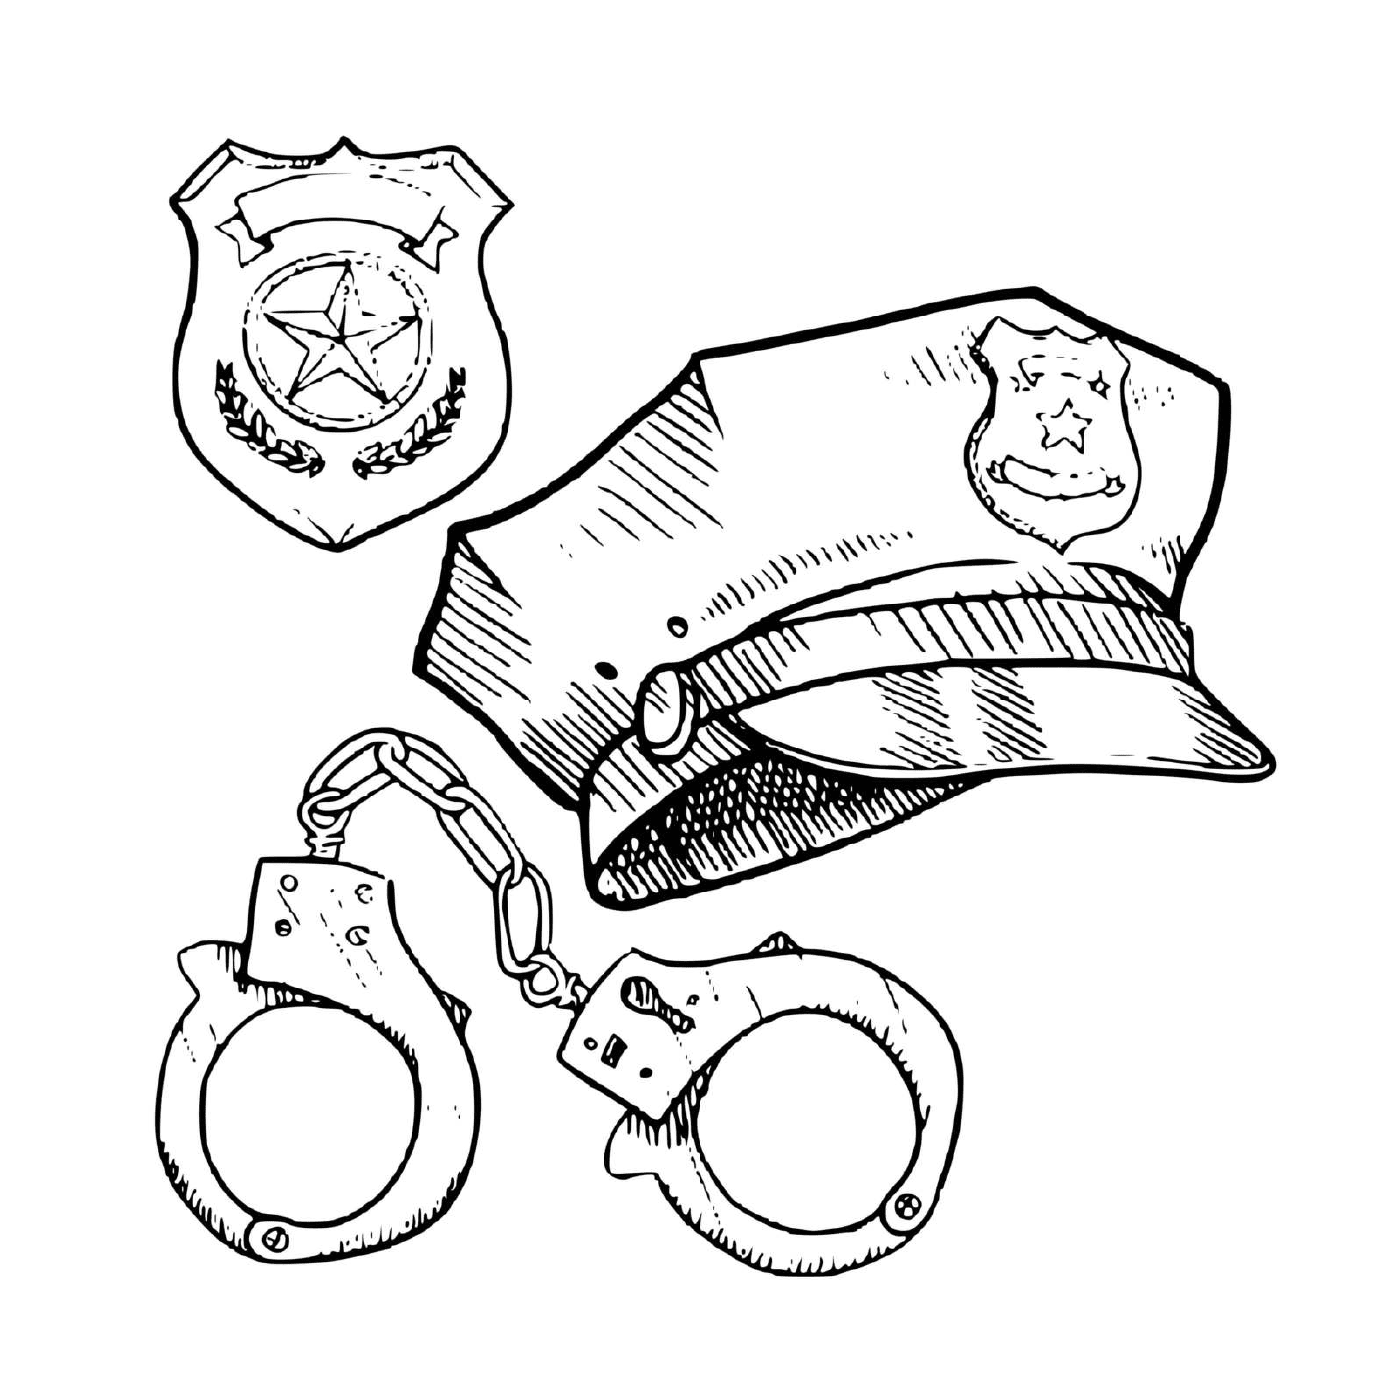  Полицейское оборудование: крышка, наручники 